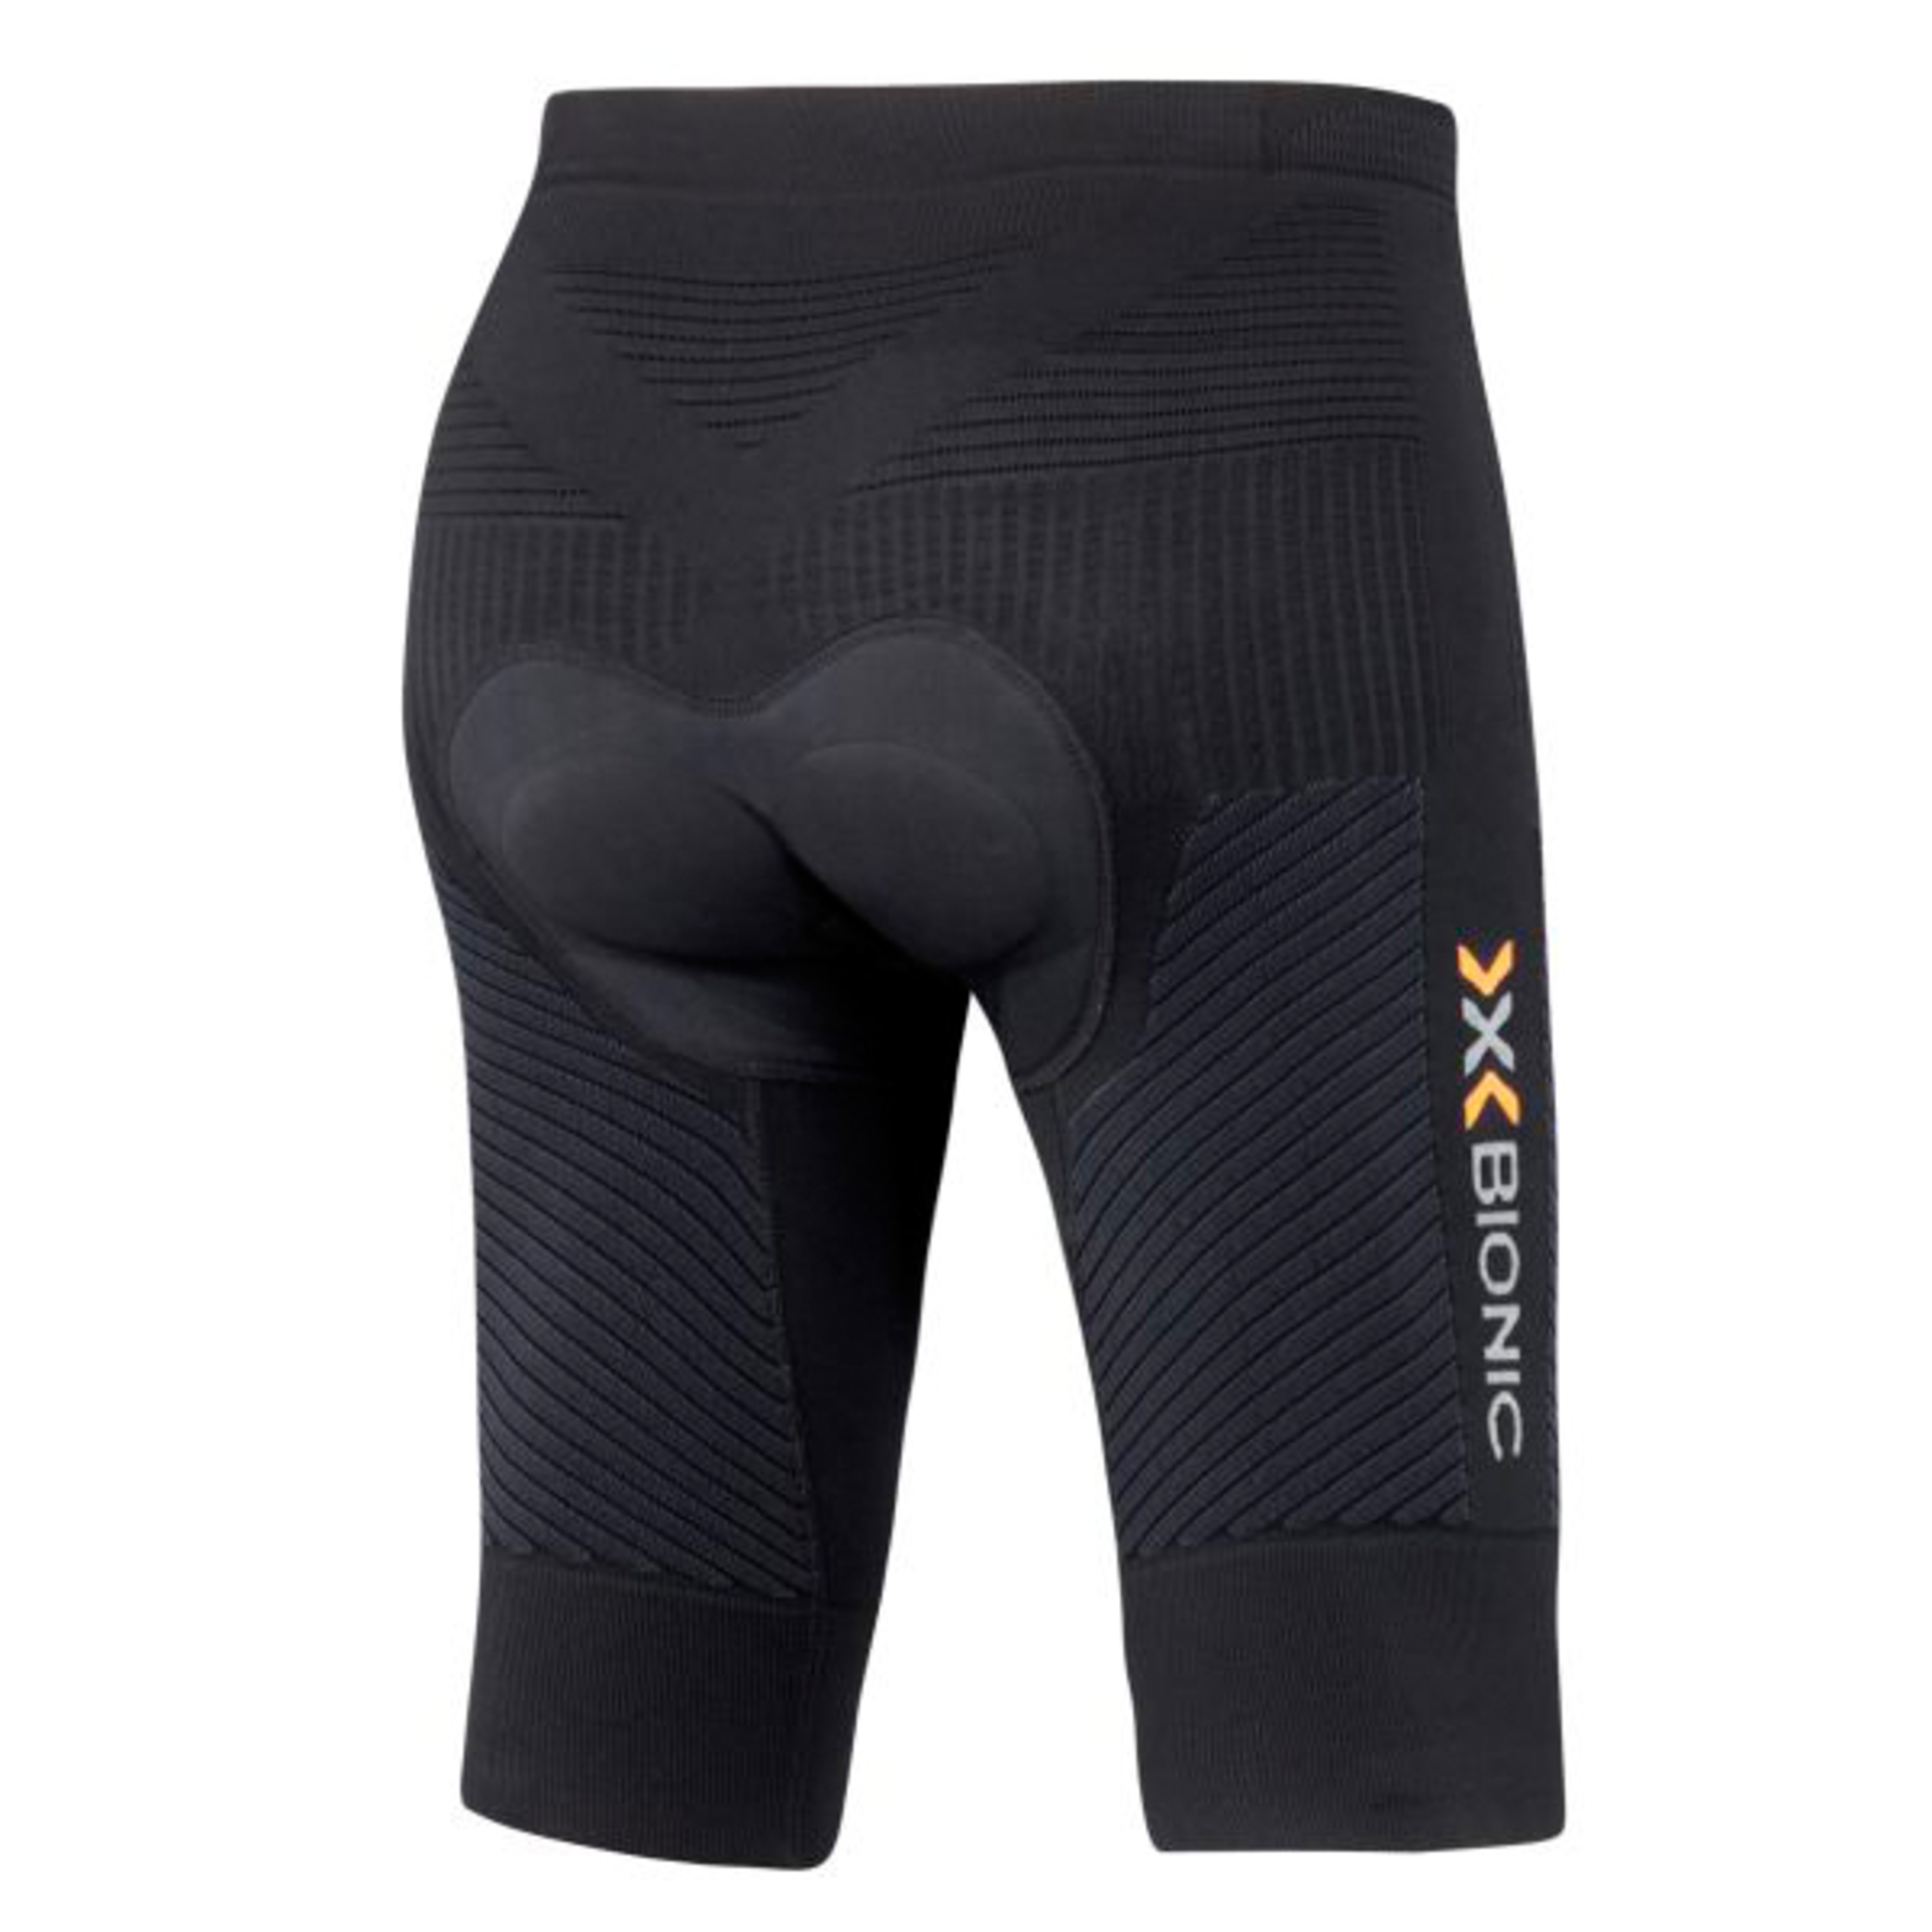 Pantalón Corto Biking Comfort De Mujer X-bionic